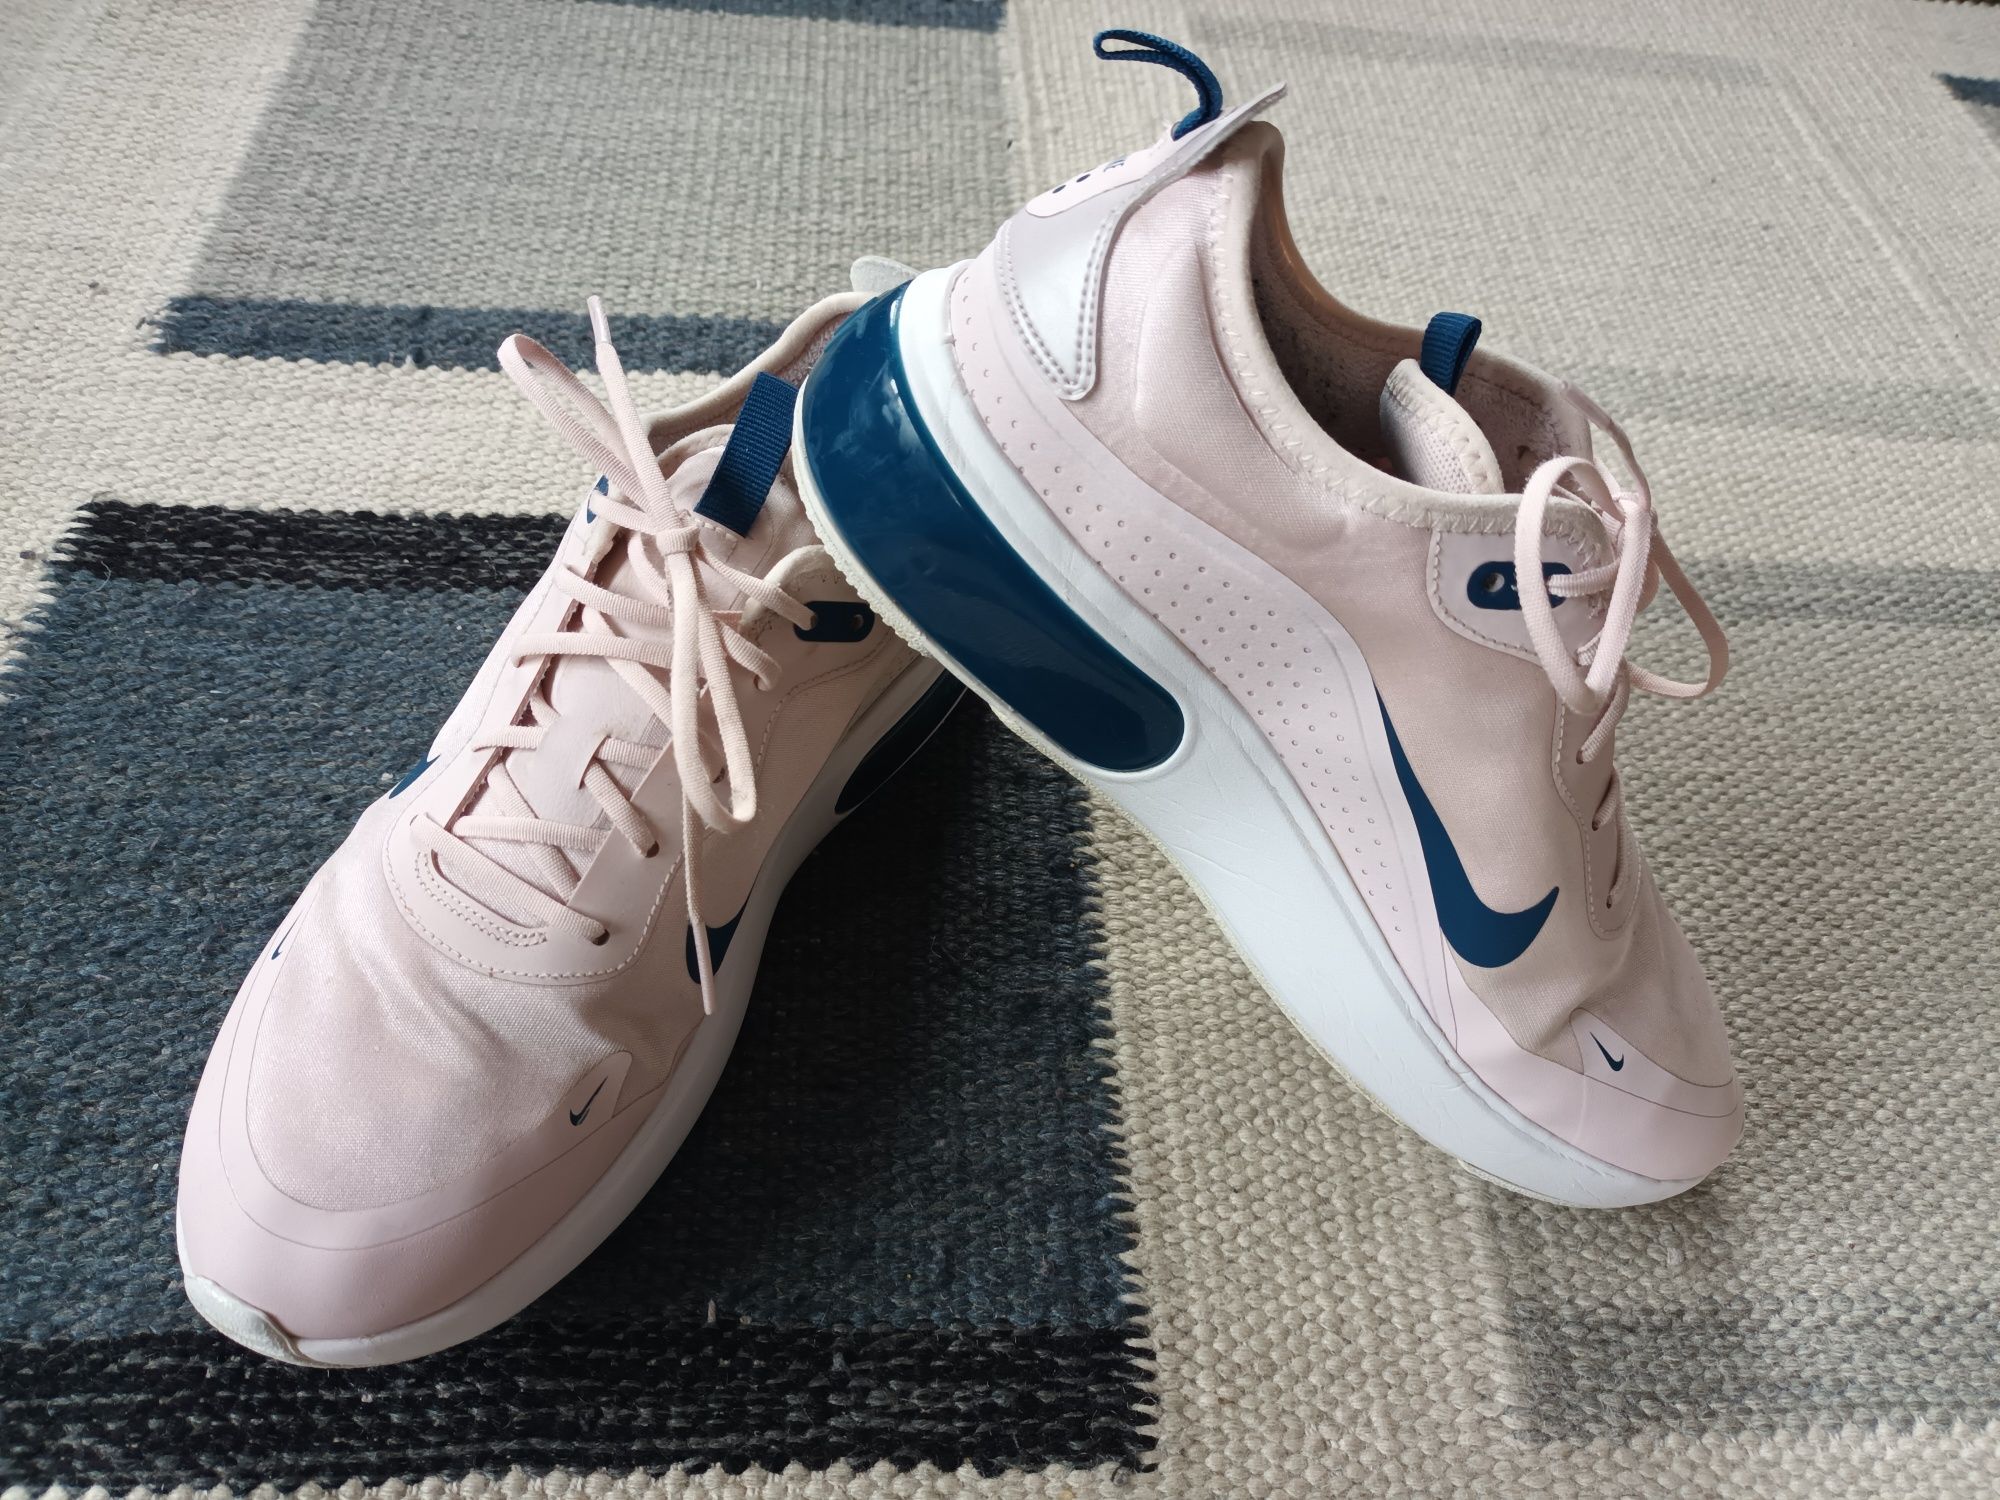 Pantofi sport/adidasi Nike Air Max Dia Barely Rose/Blue, nr. 41